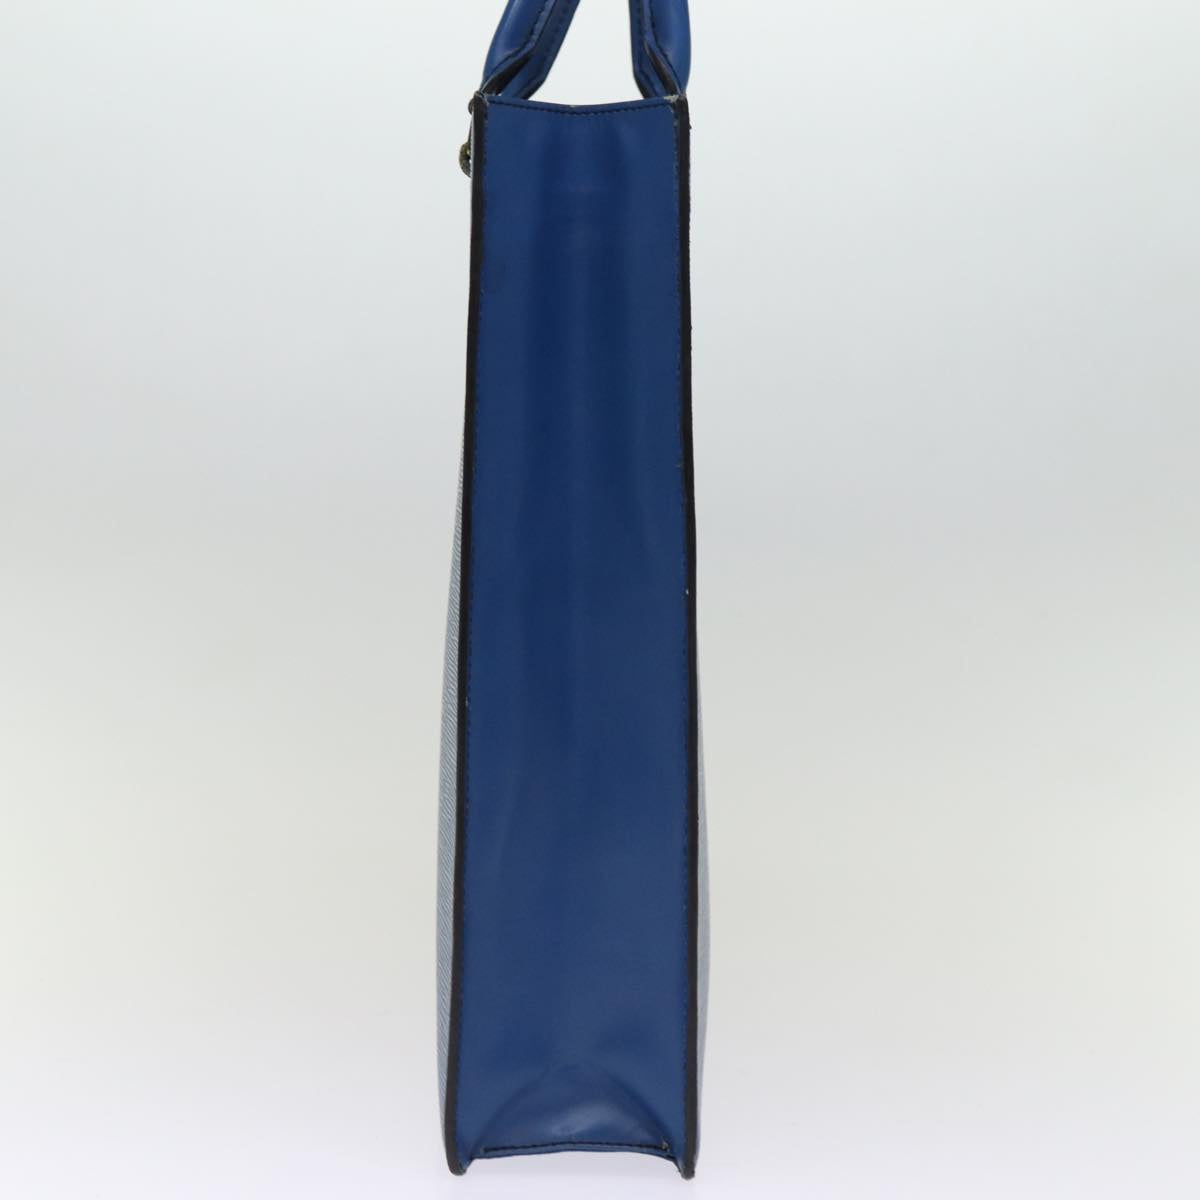 LOUIS VUITTON Epi Sac Plat Hand Bag Blue M52075 LV Auth 74512